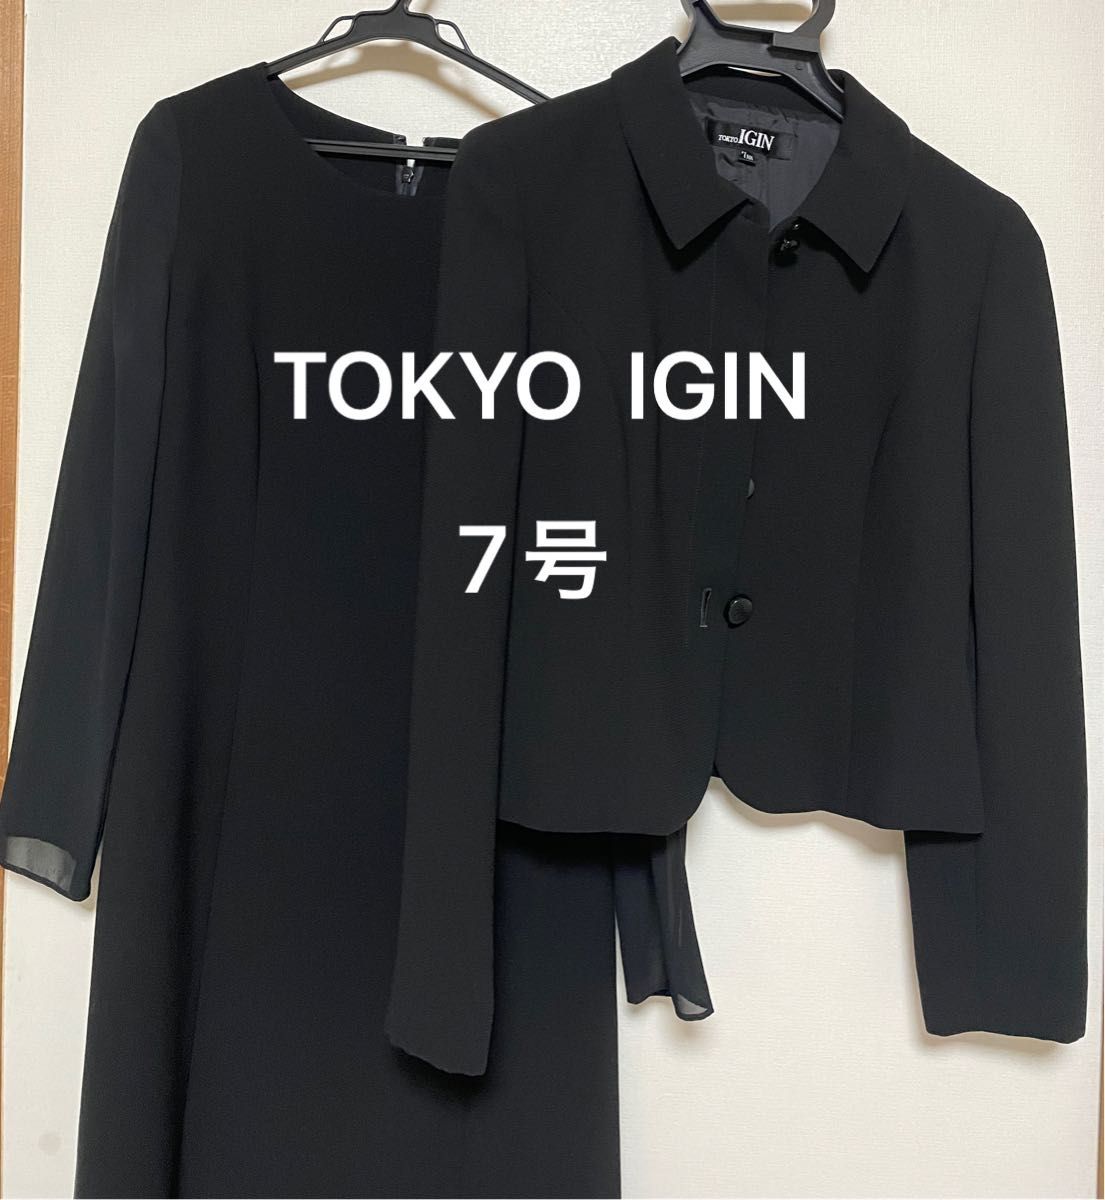 美品  TOKYO IGIN 東京イギン ワンピース 7号 (S) レディース 黒 ブラック フォーマル 日本製 喪服 ミセス 